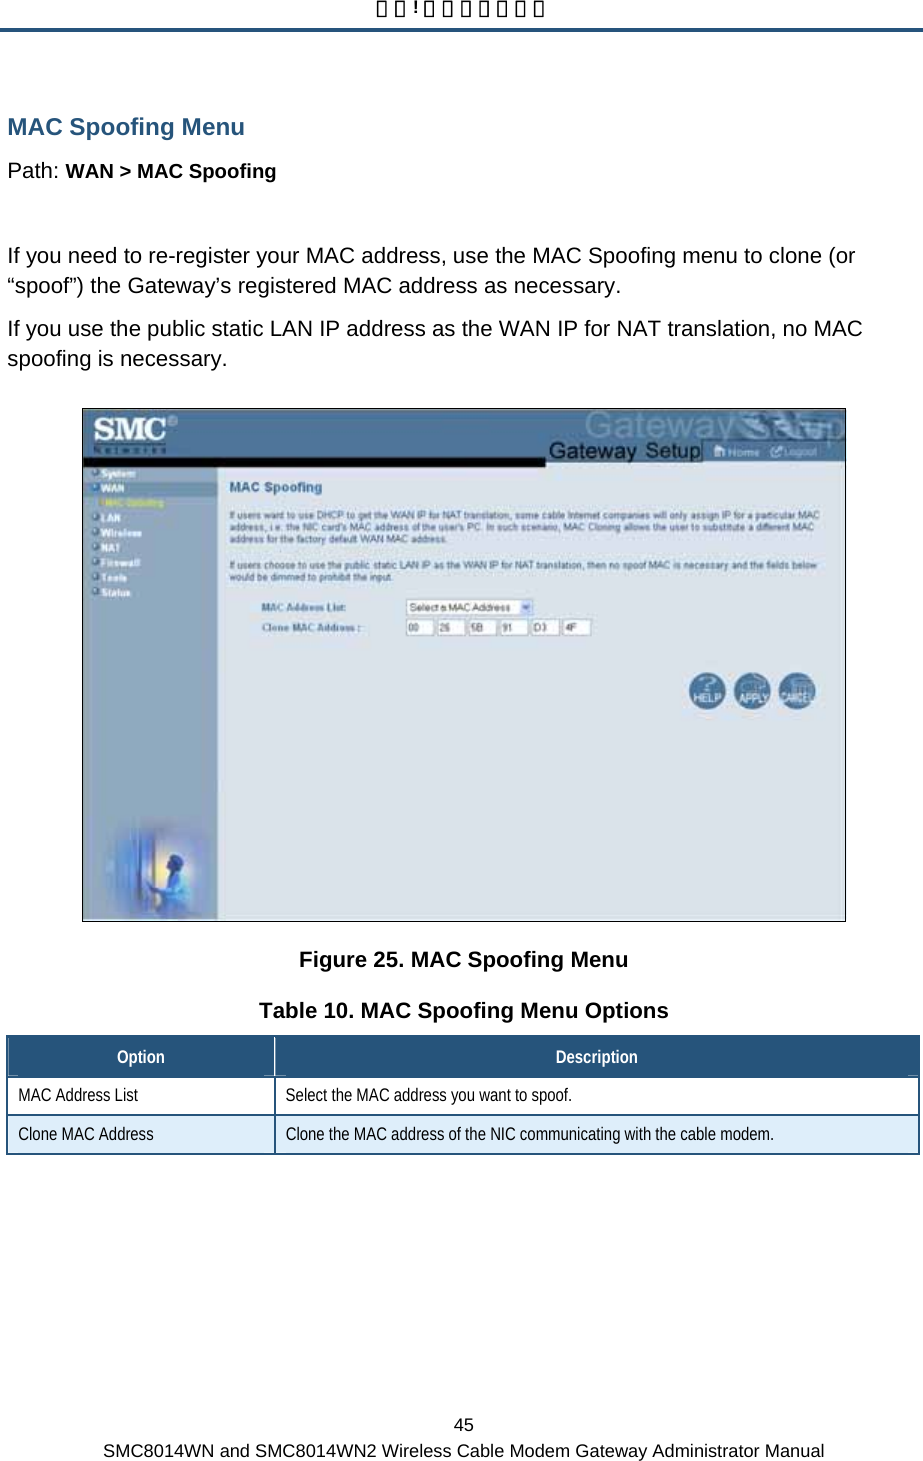 錯誤! 尚未定義樣式。 45 SMC8014WN and SMC8014WN2 Wireless Cable Modem Gateway Administrator Manual MAC Spoofing Menu Path: WAN &gt; MAC Spoofing  If you need to re-register your MAC address, use the MAC Spoofing menu to clone (or “spoof”) the Gateway’s registered MAC address as necessary. If you use the public static LAN IP address as the WAN IP for NAT translation, no MAC spoofing is necessary.  Figure 25. MAC Spoofing Menu Table 10. MAC Spoofing Menu Options Option  Description MAC Address List  Select the MAC address you want to spoof. Clone MAC Address  Clone the MAC address of the NIC communicating with the cable modem. 